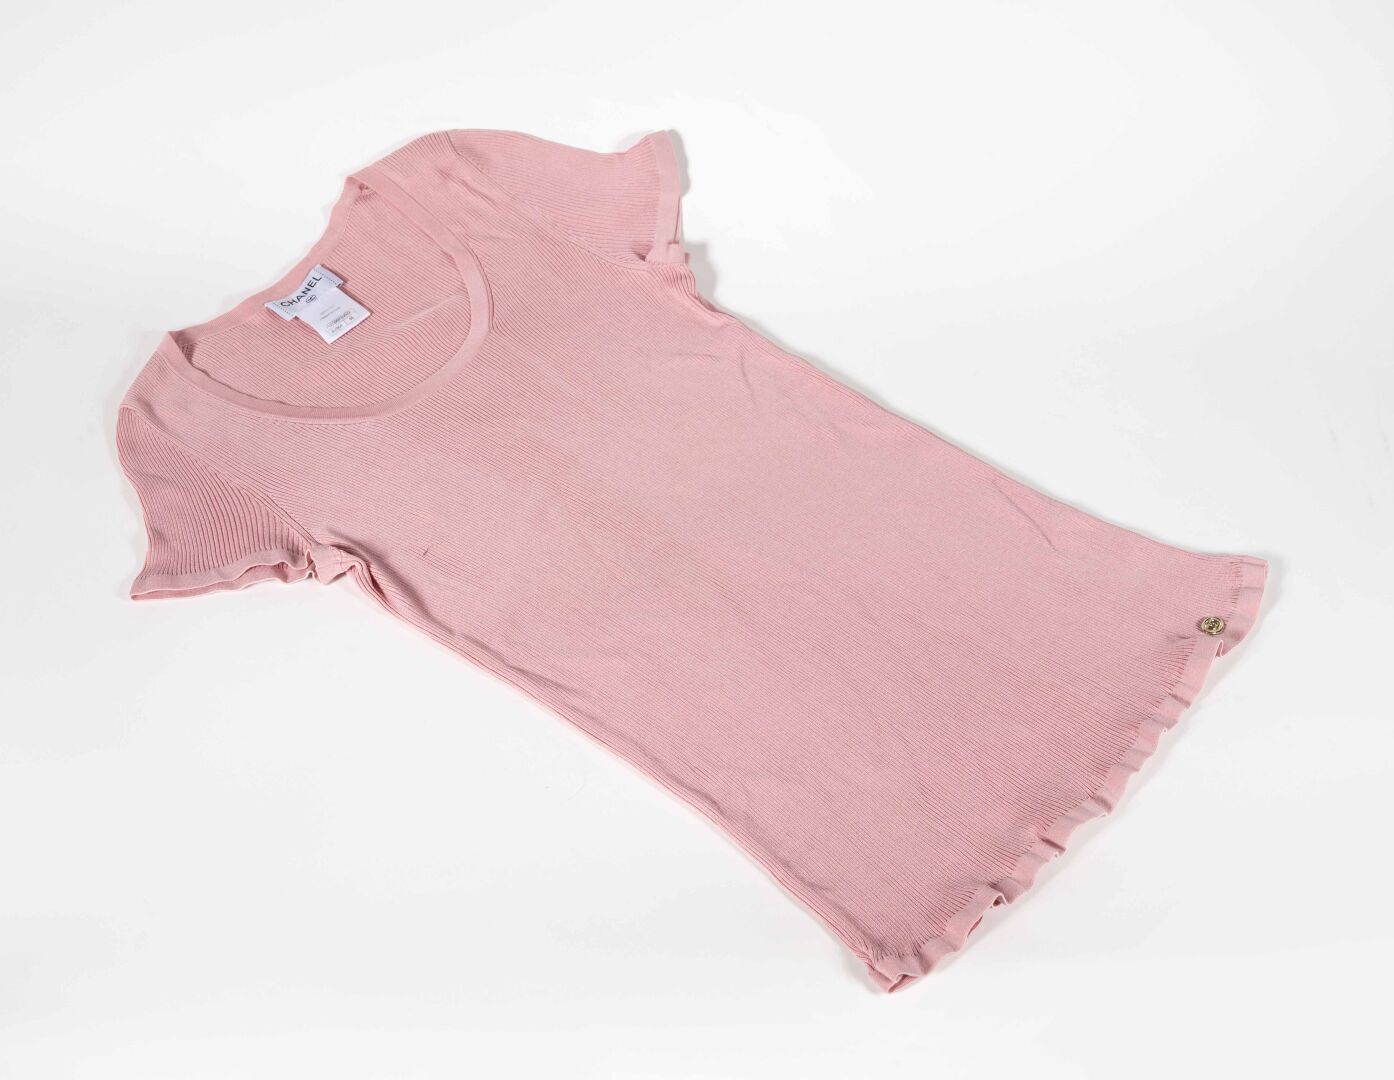 CHANEL Camiseta rosa de algodón y poliéster, talla 46

Buen estado, pequeña manc&hellip;